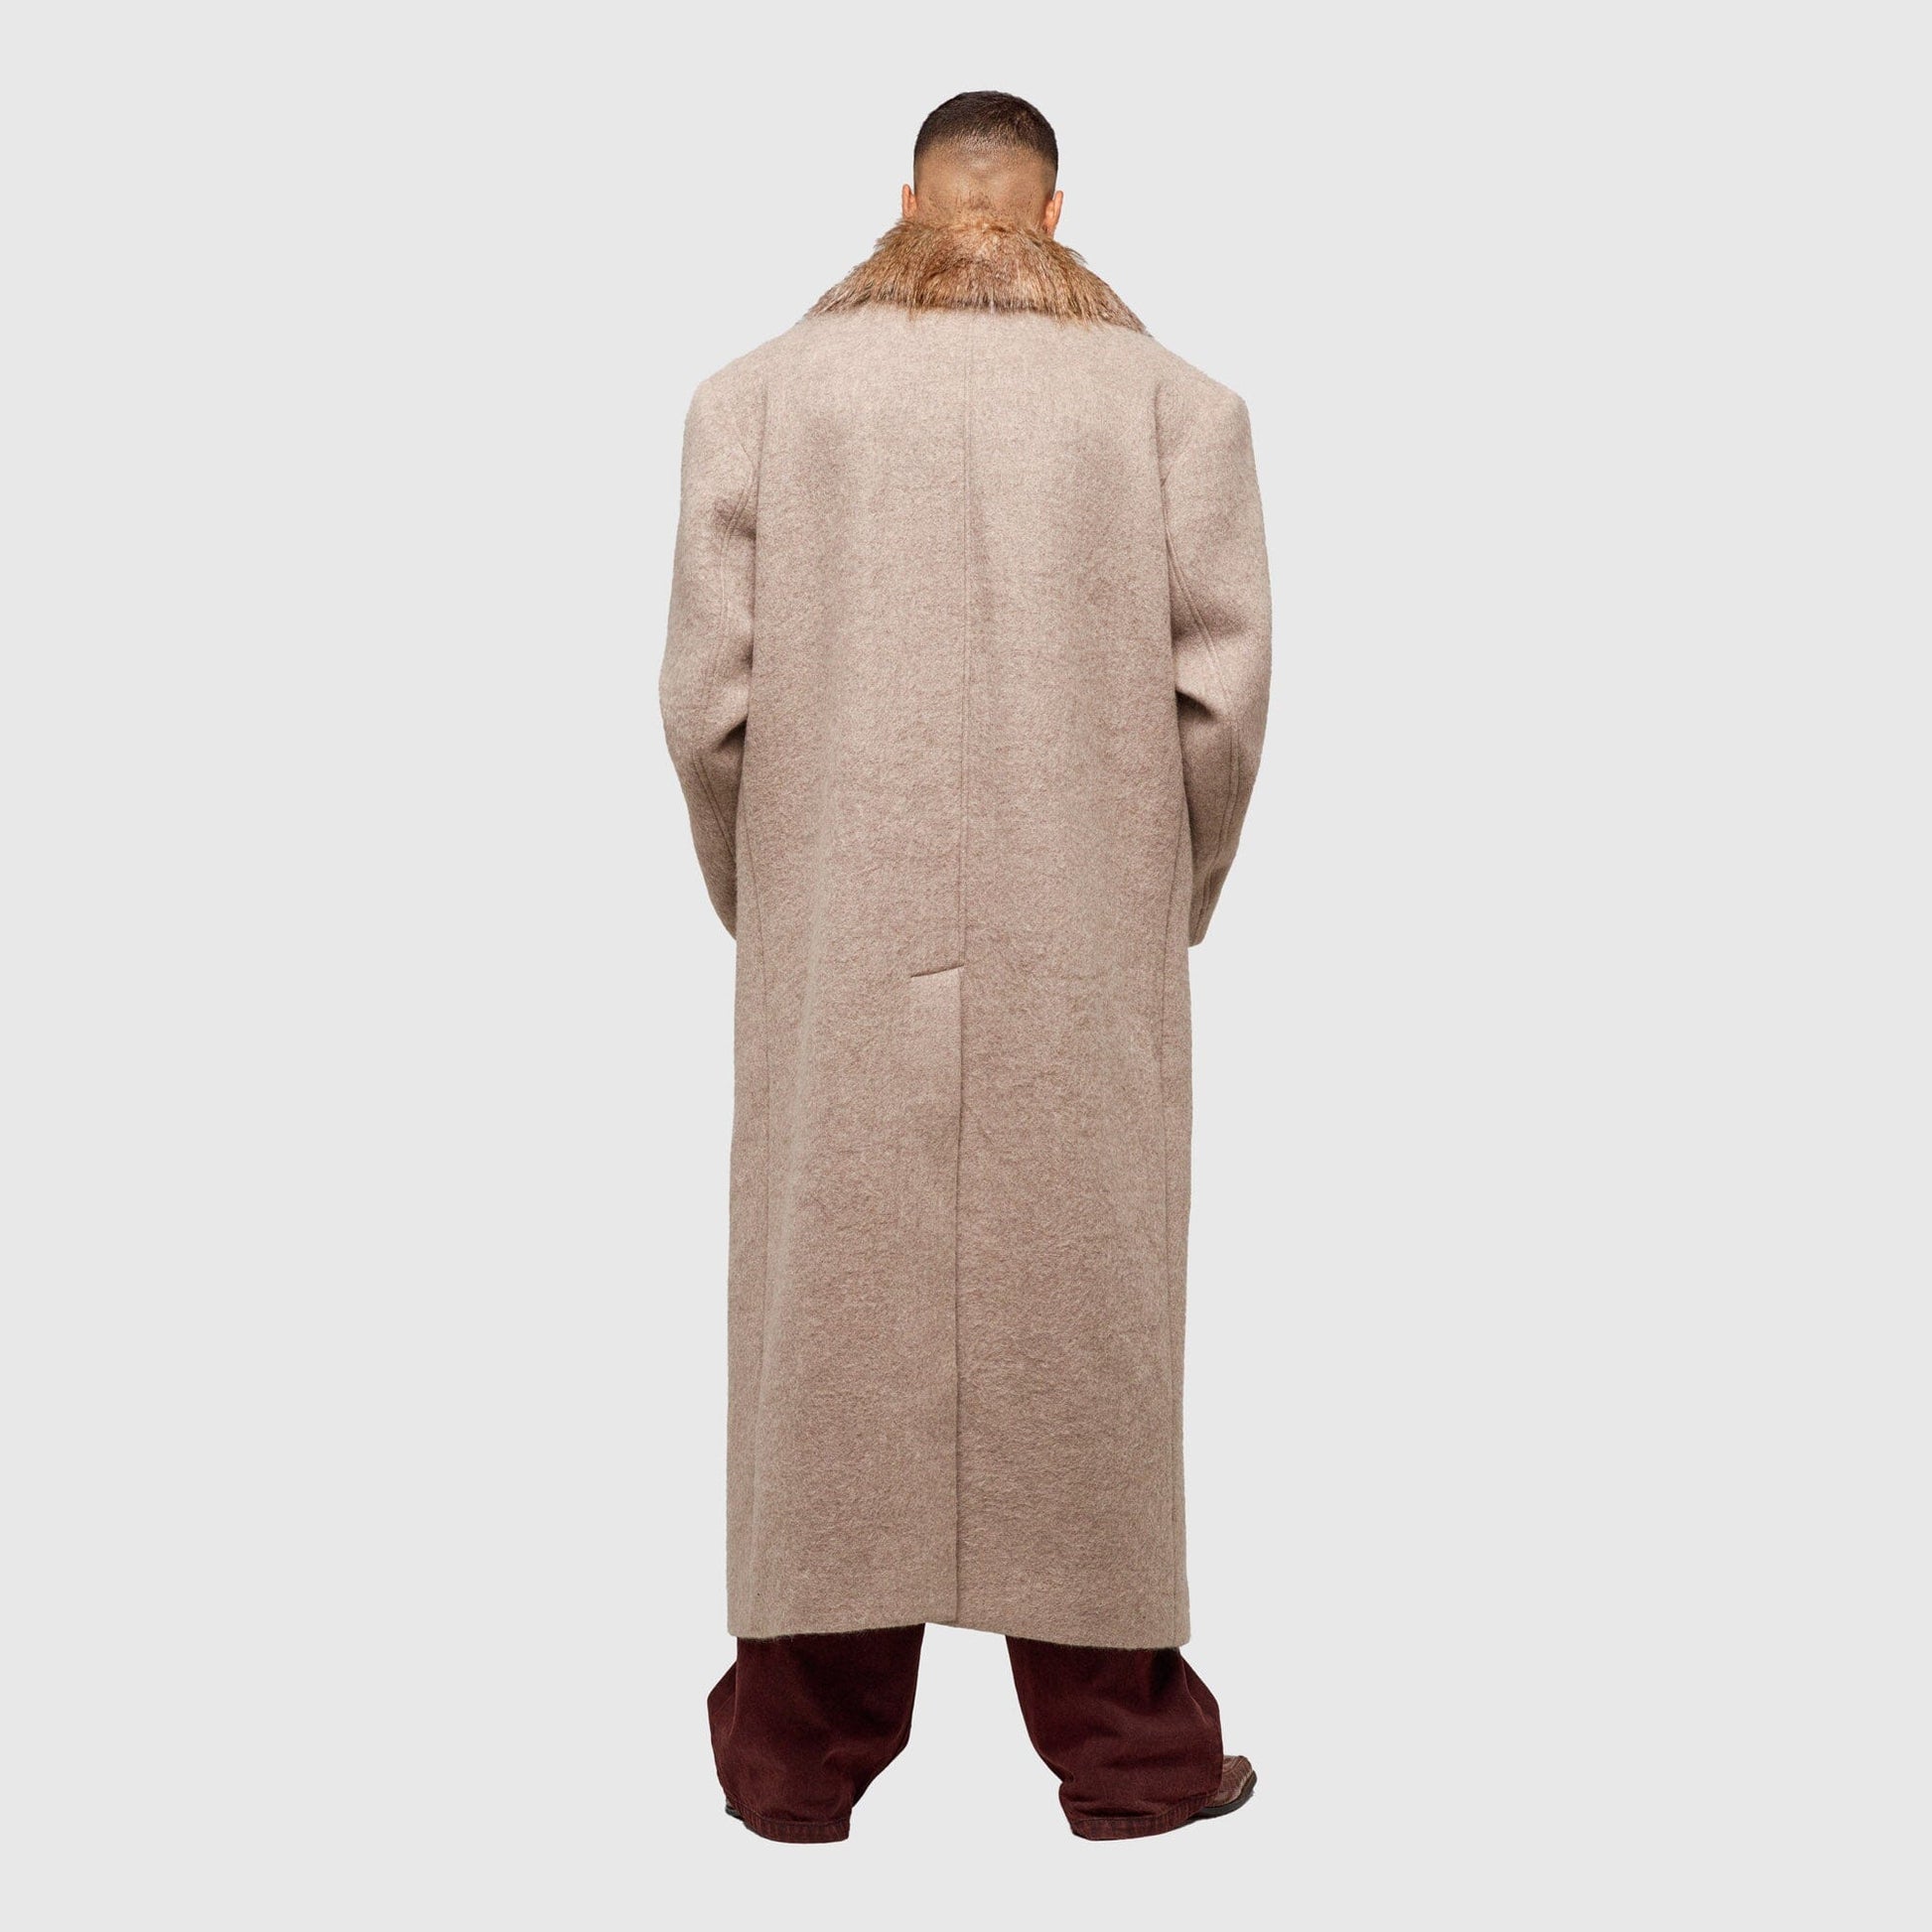 1313 SELAH Long Wool Coat - Taupe Coat 1313 SELAH 